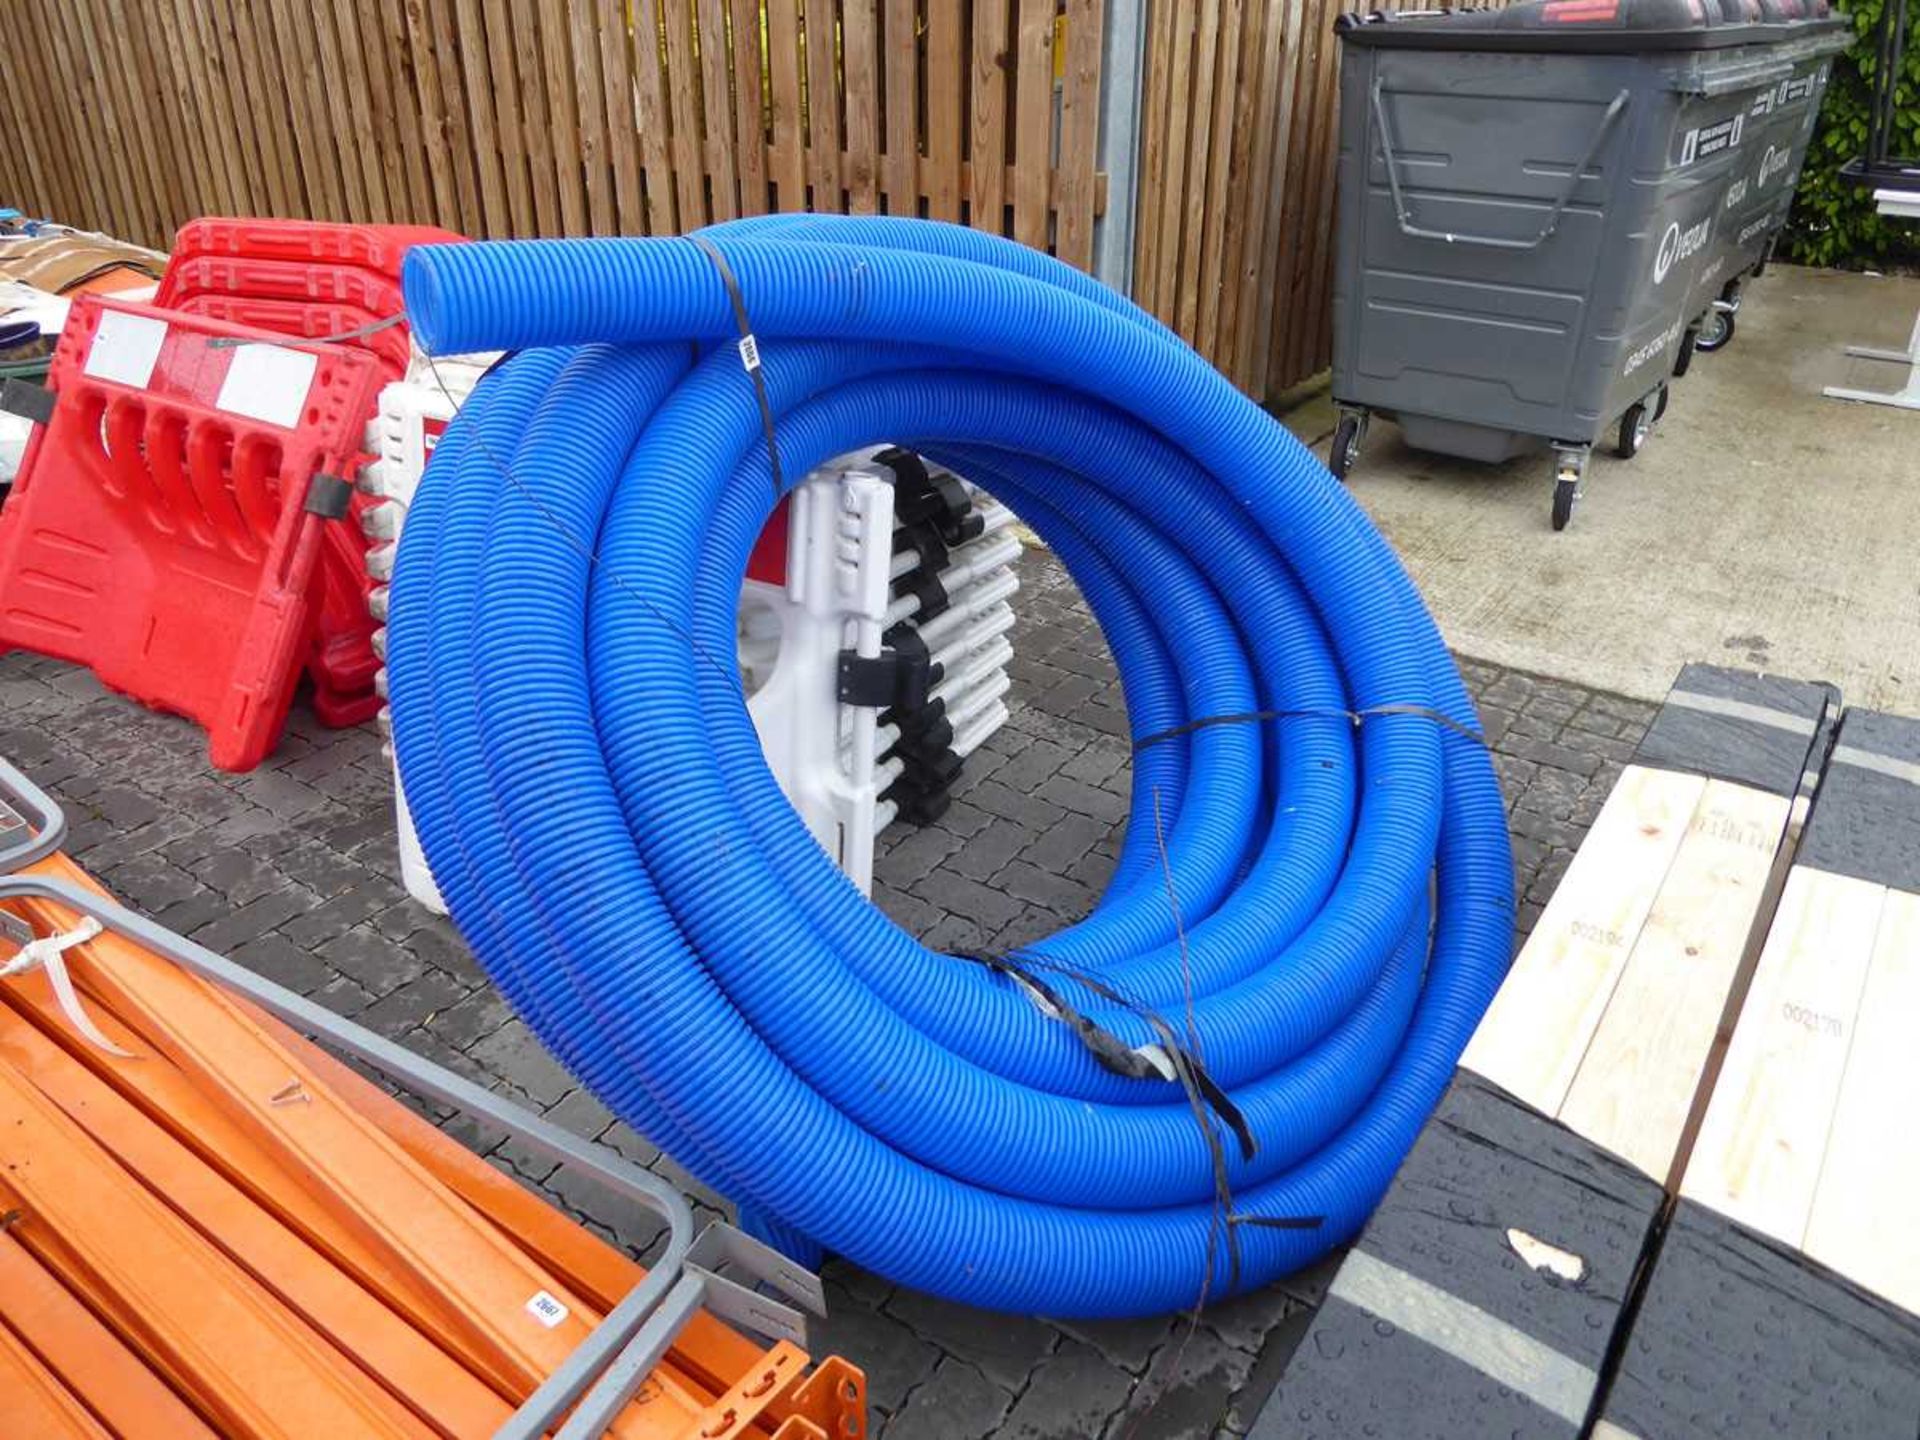 Large reel of blue hosing